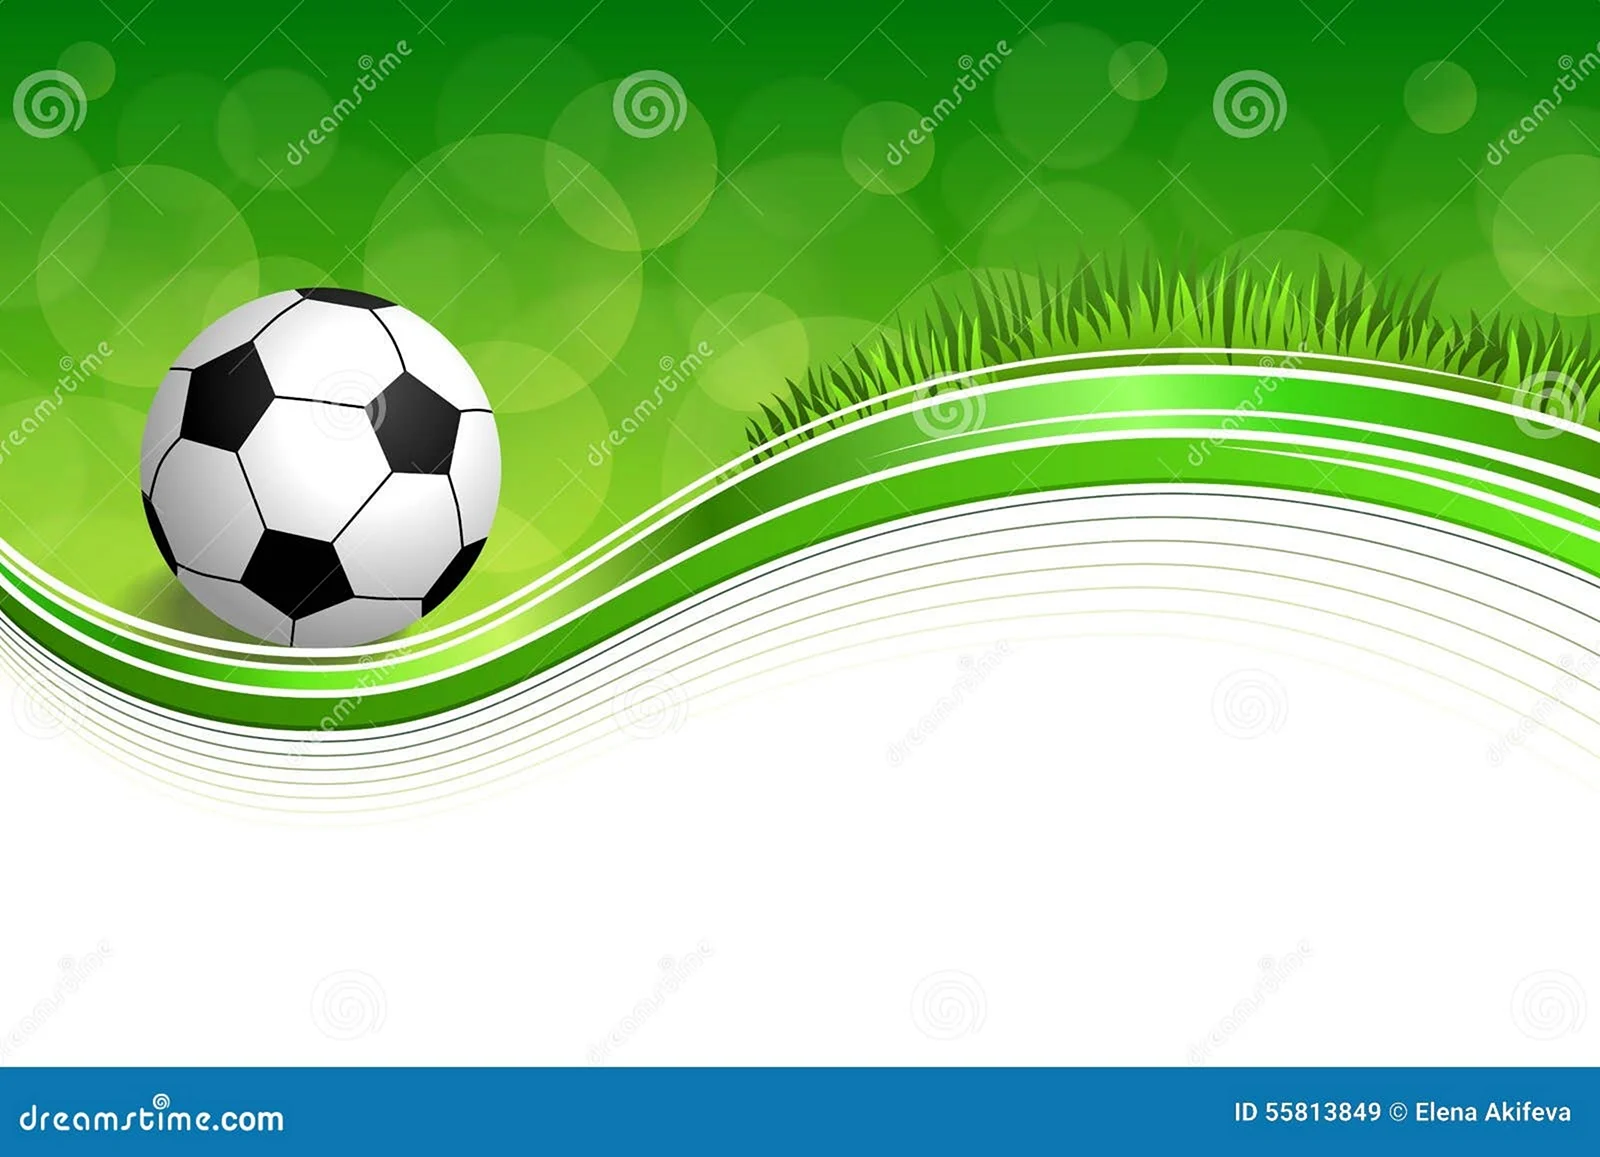 Футбольная тема на зеленом фоне